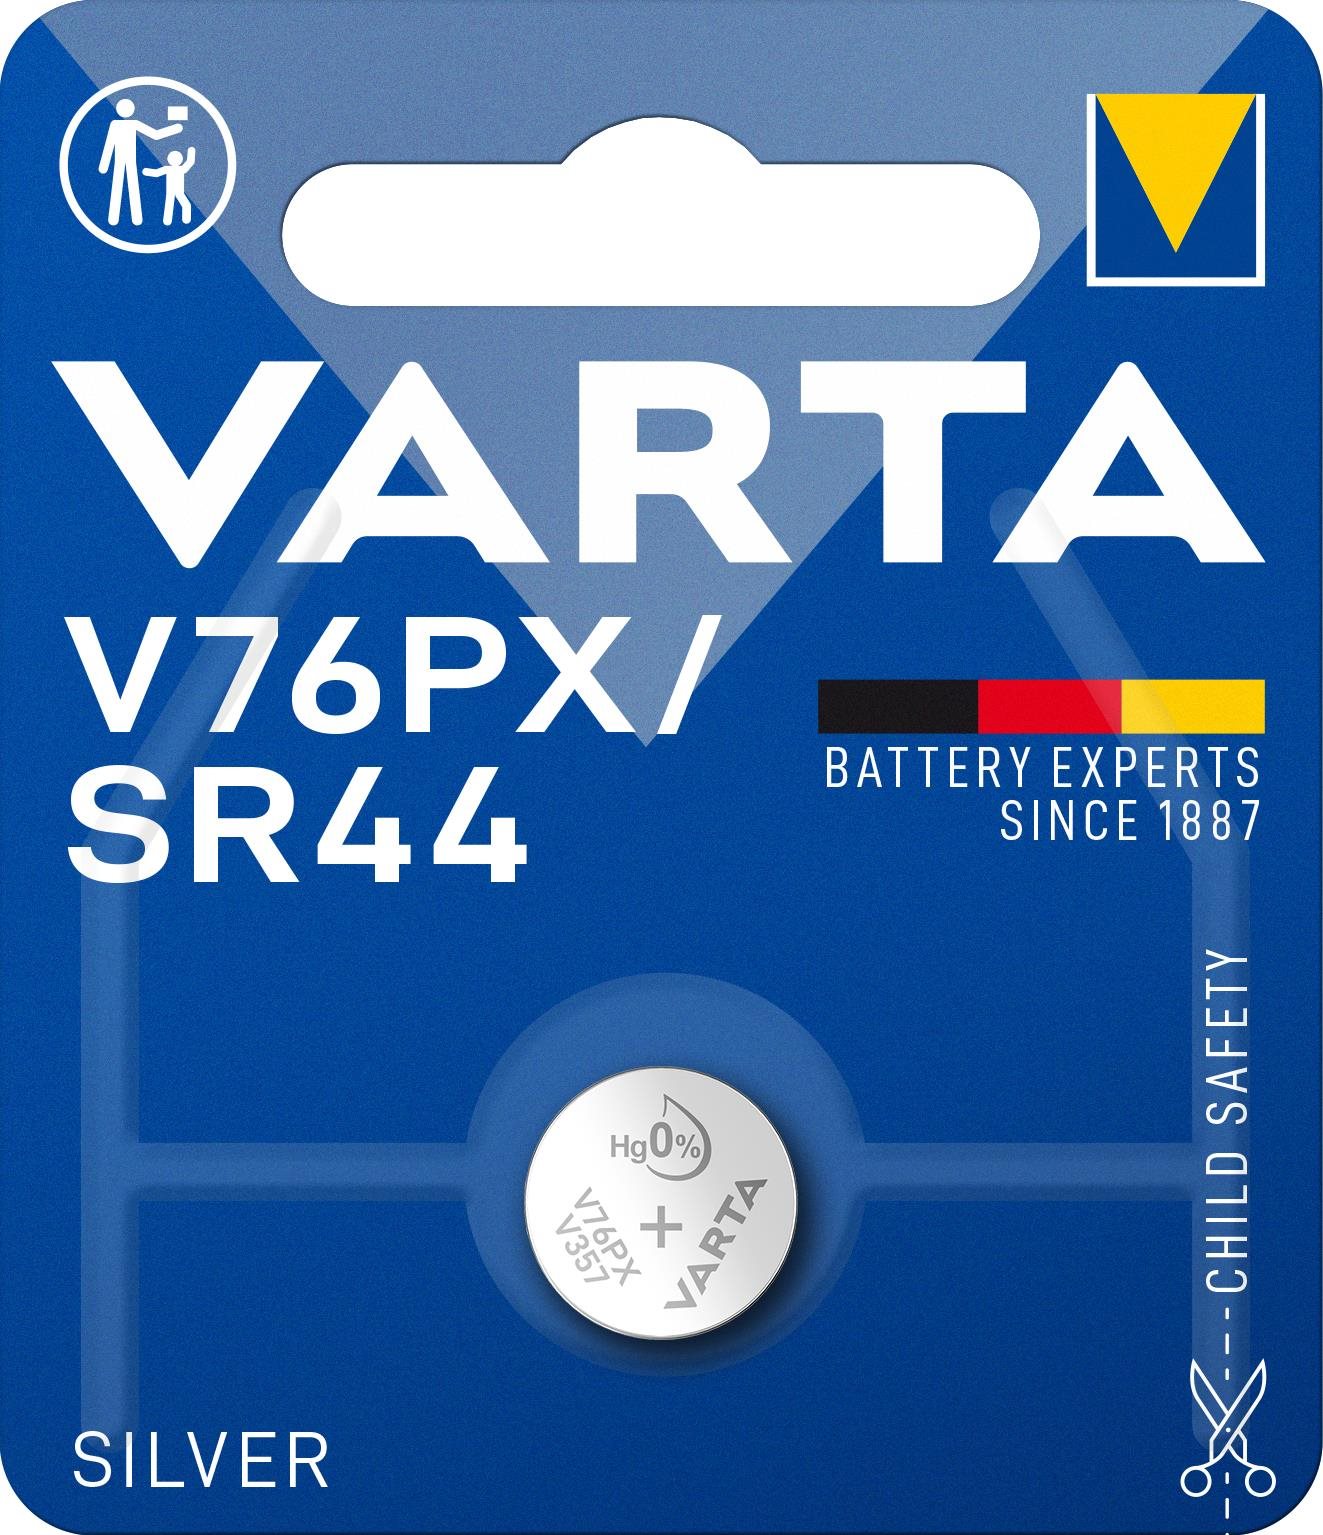 VARTA V76PX/SR44 Speciális ezüst-oxid elem - 1 db